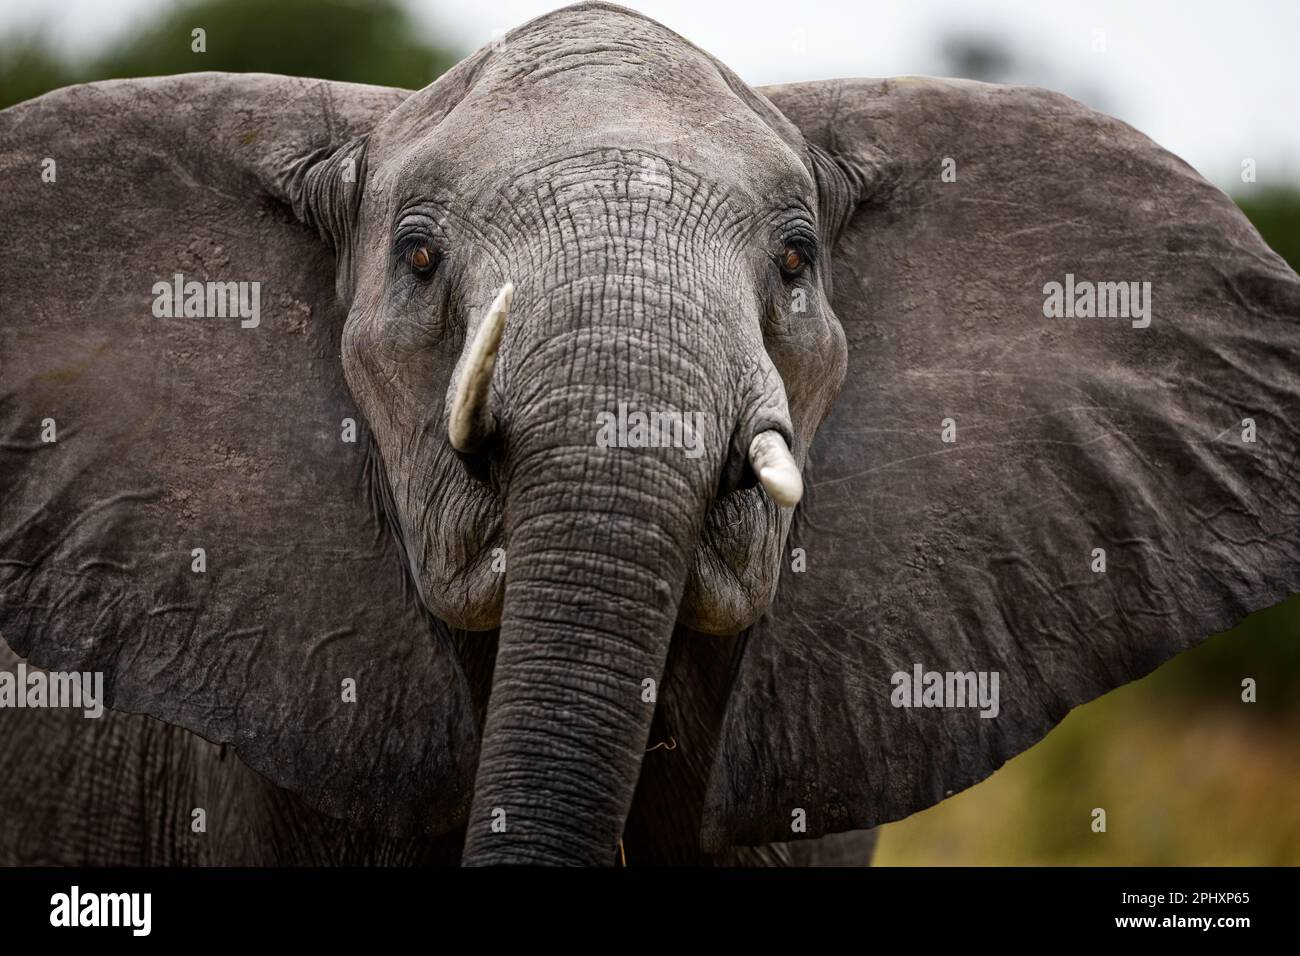 Portrait d'éléphant d'Afrique - rencontre étroite avec un éléphant d'Afrique. Les éléphants femelles sont toujours très protecteurs - Okavango Delta, Botswana, Botsuana. Banque D'Images